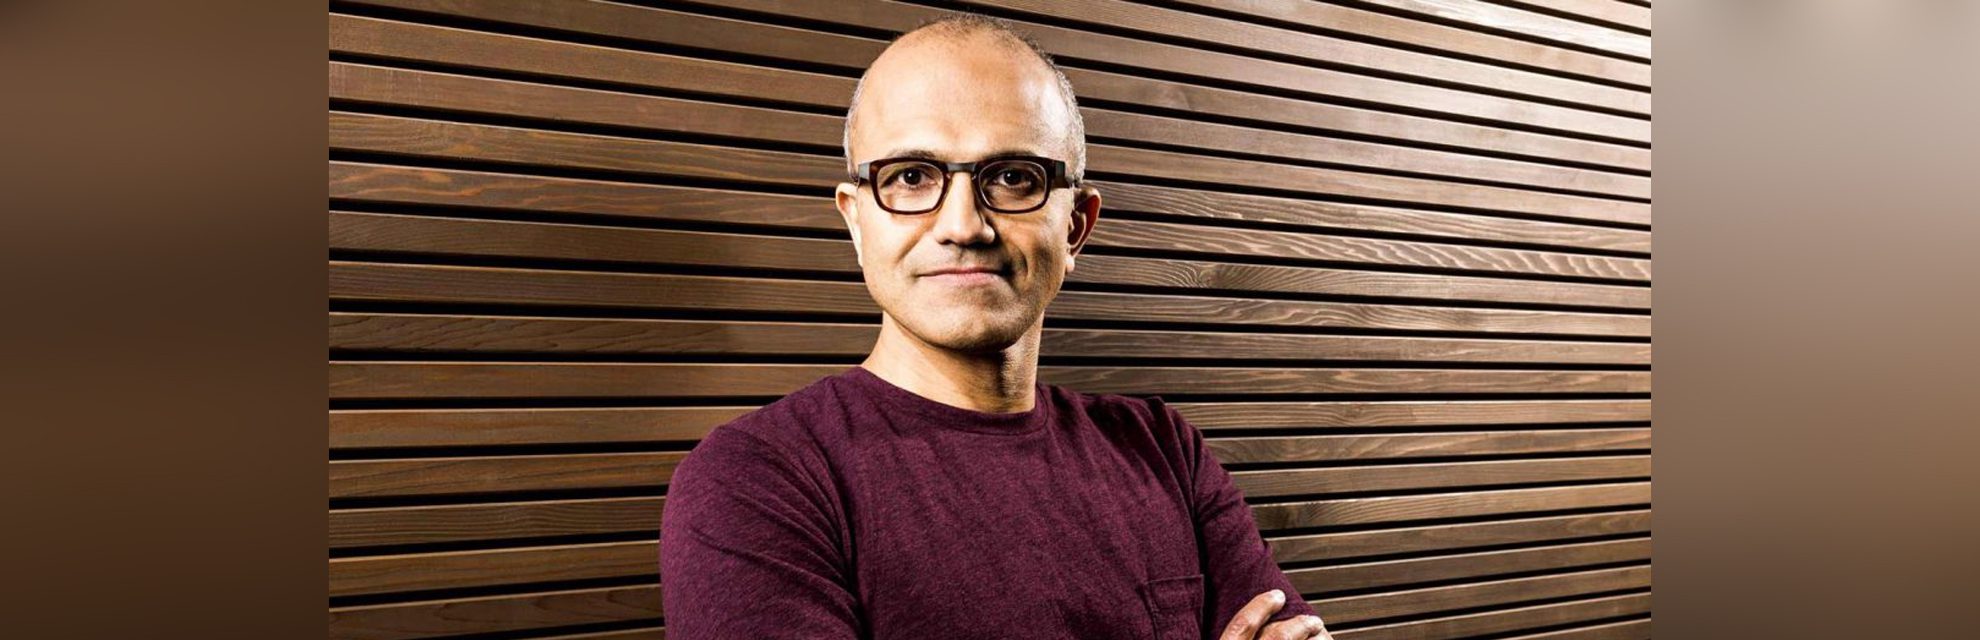 Der Erfolg von Microsoft-CEO Satya Nadella beruht auf Empathie